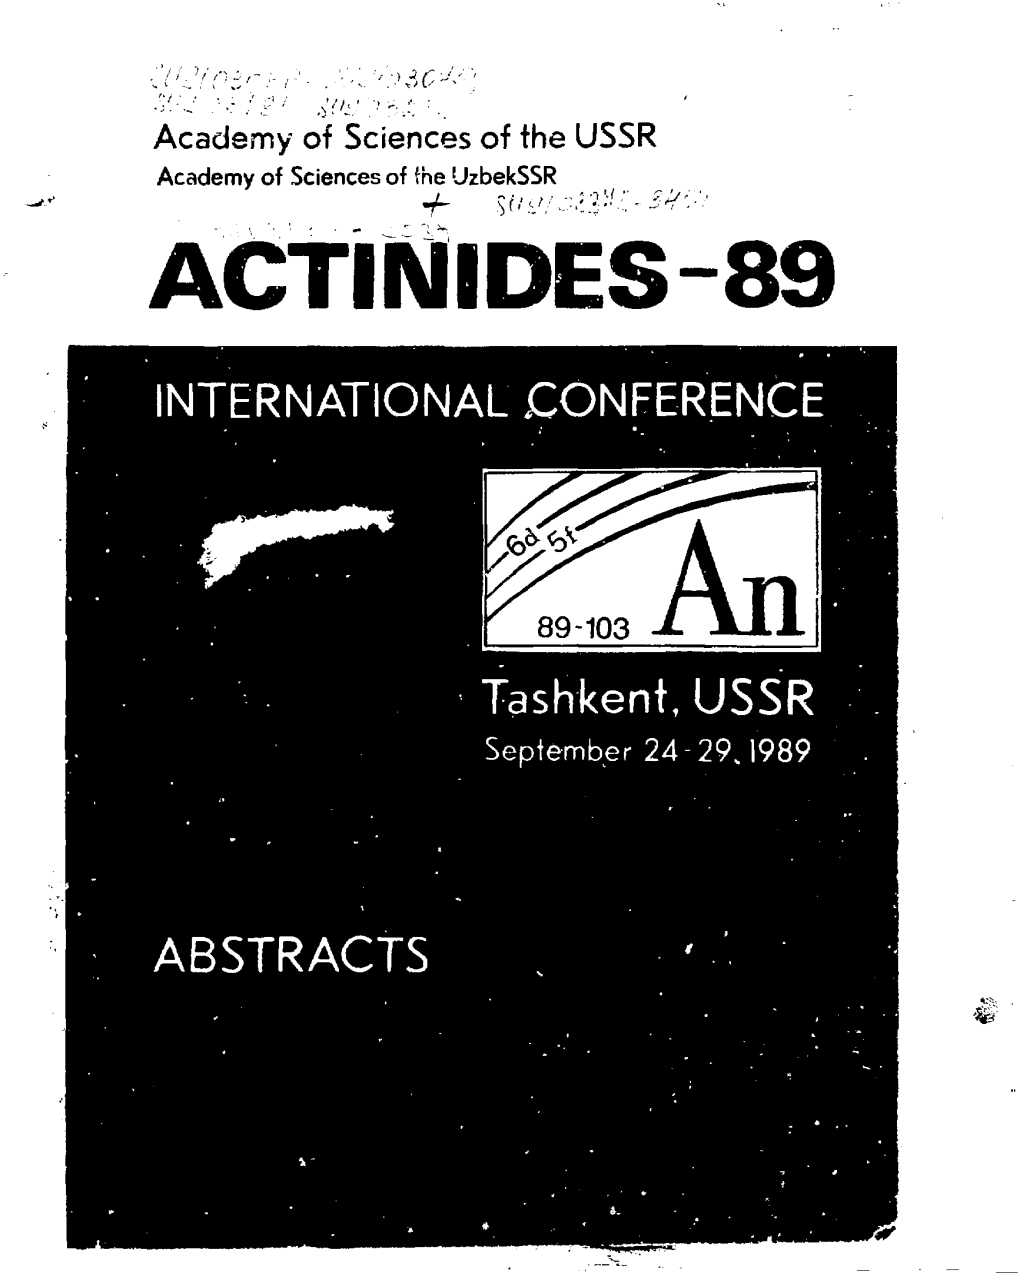 Actinbdes-89